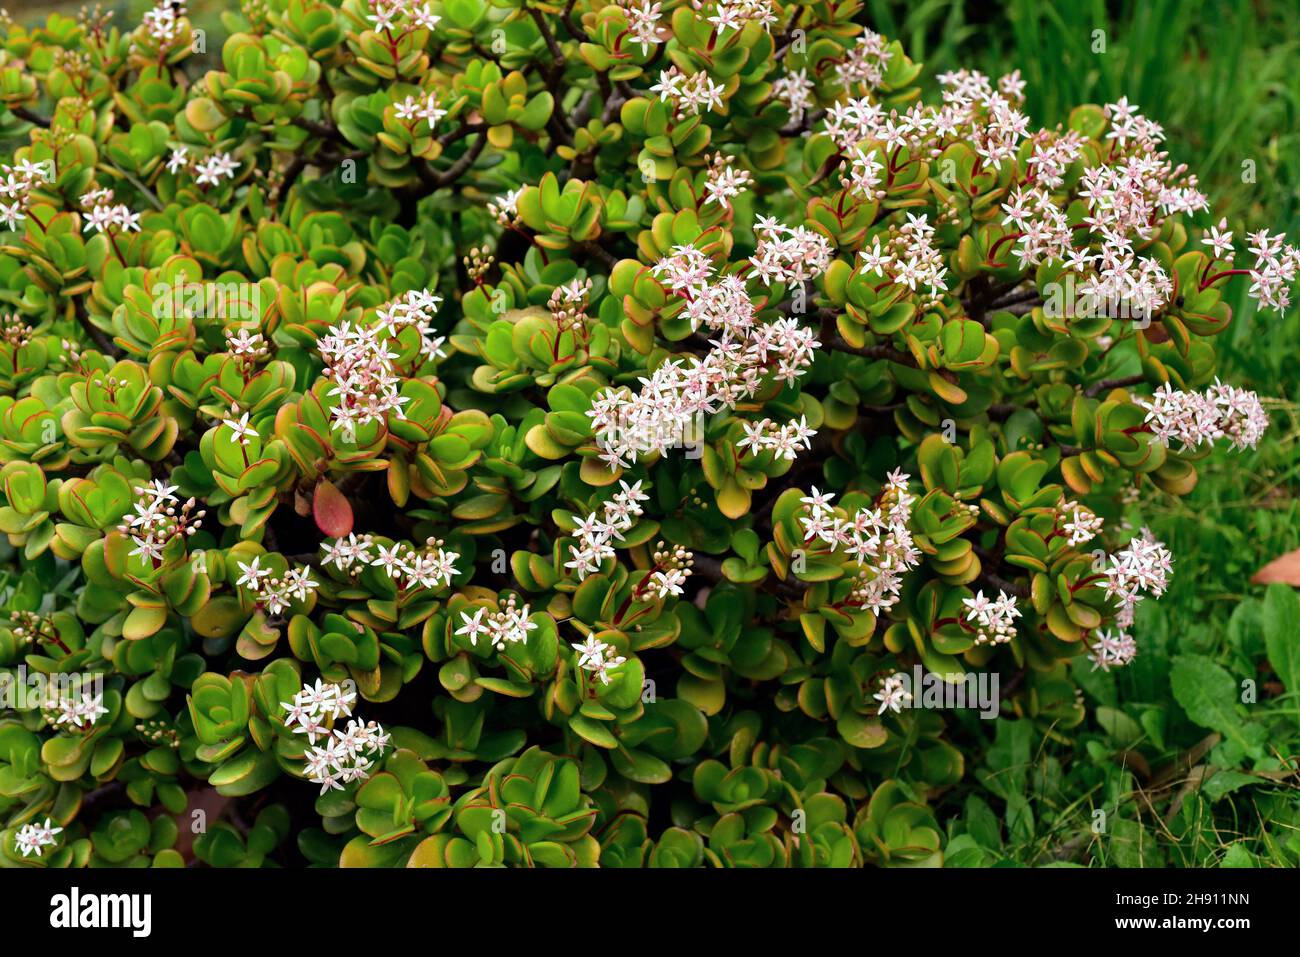 La plante de Jade ou d'argent (Crassula ovata) est une plante succulente originaire d'Afrique australe. Banque D'Images